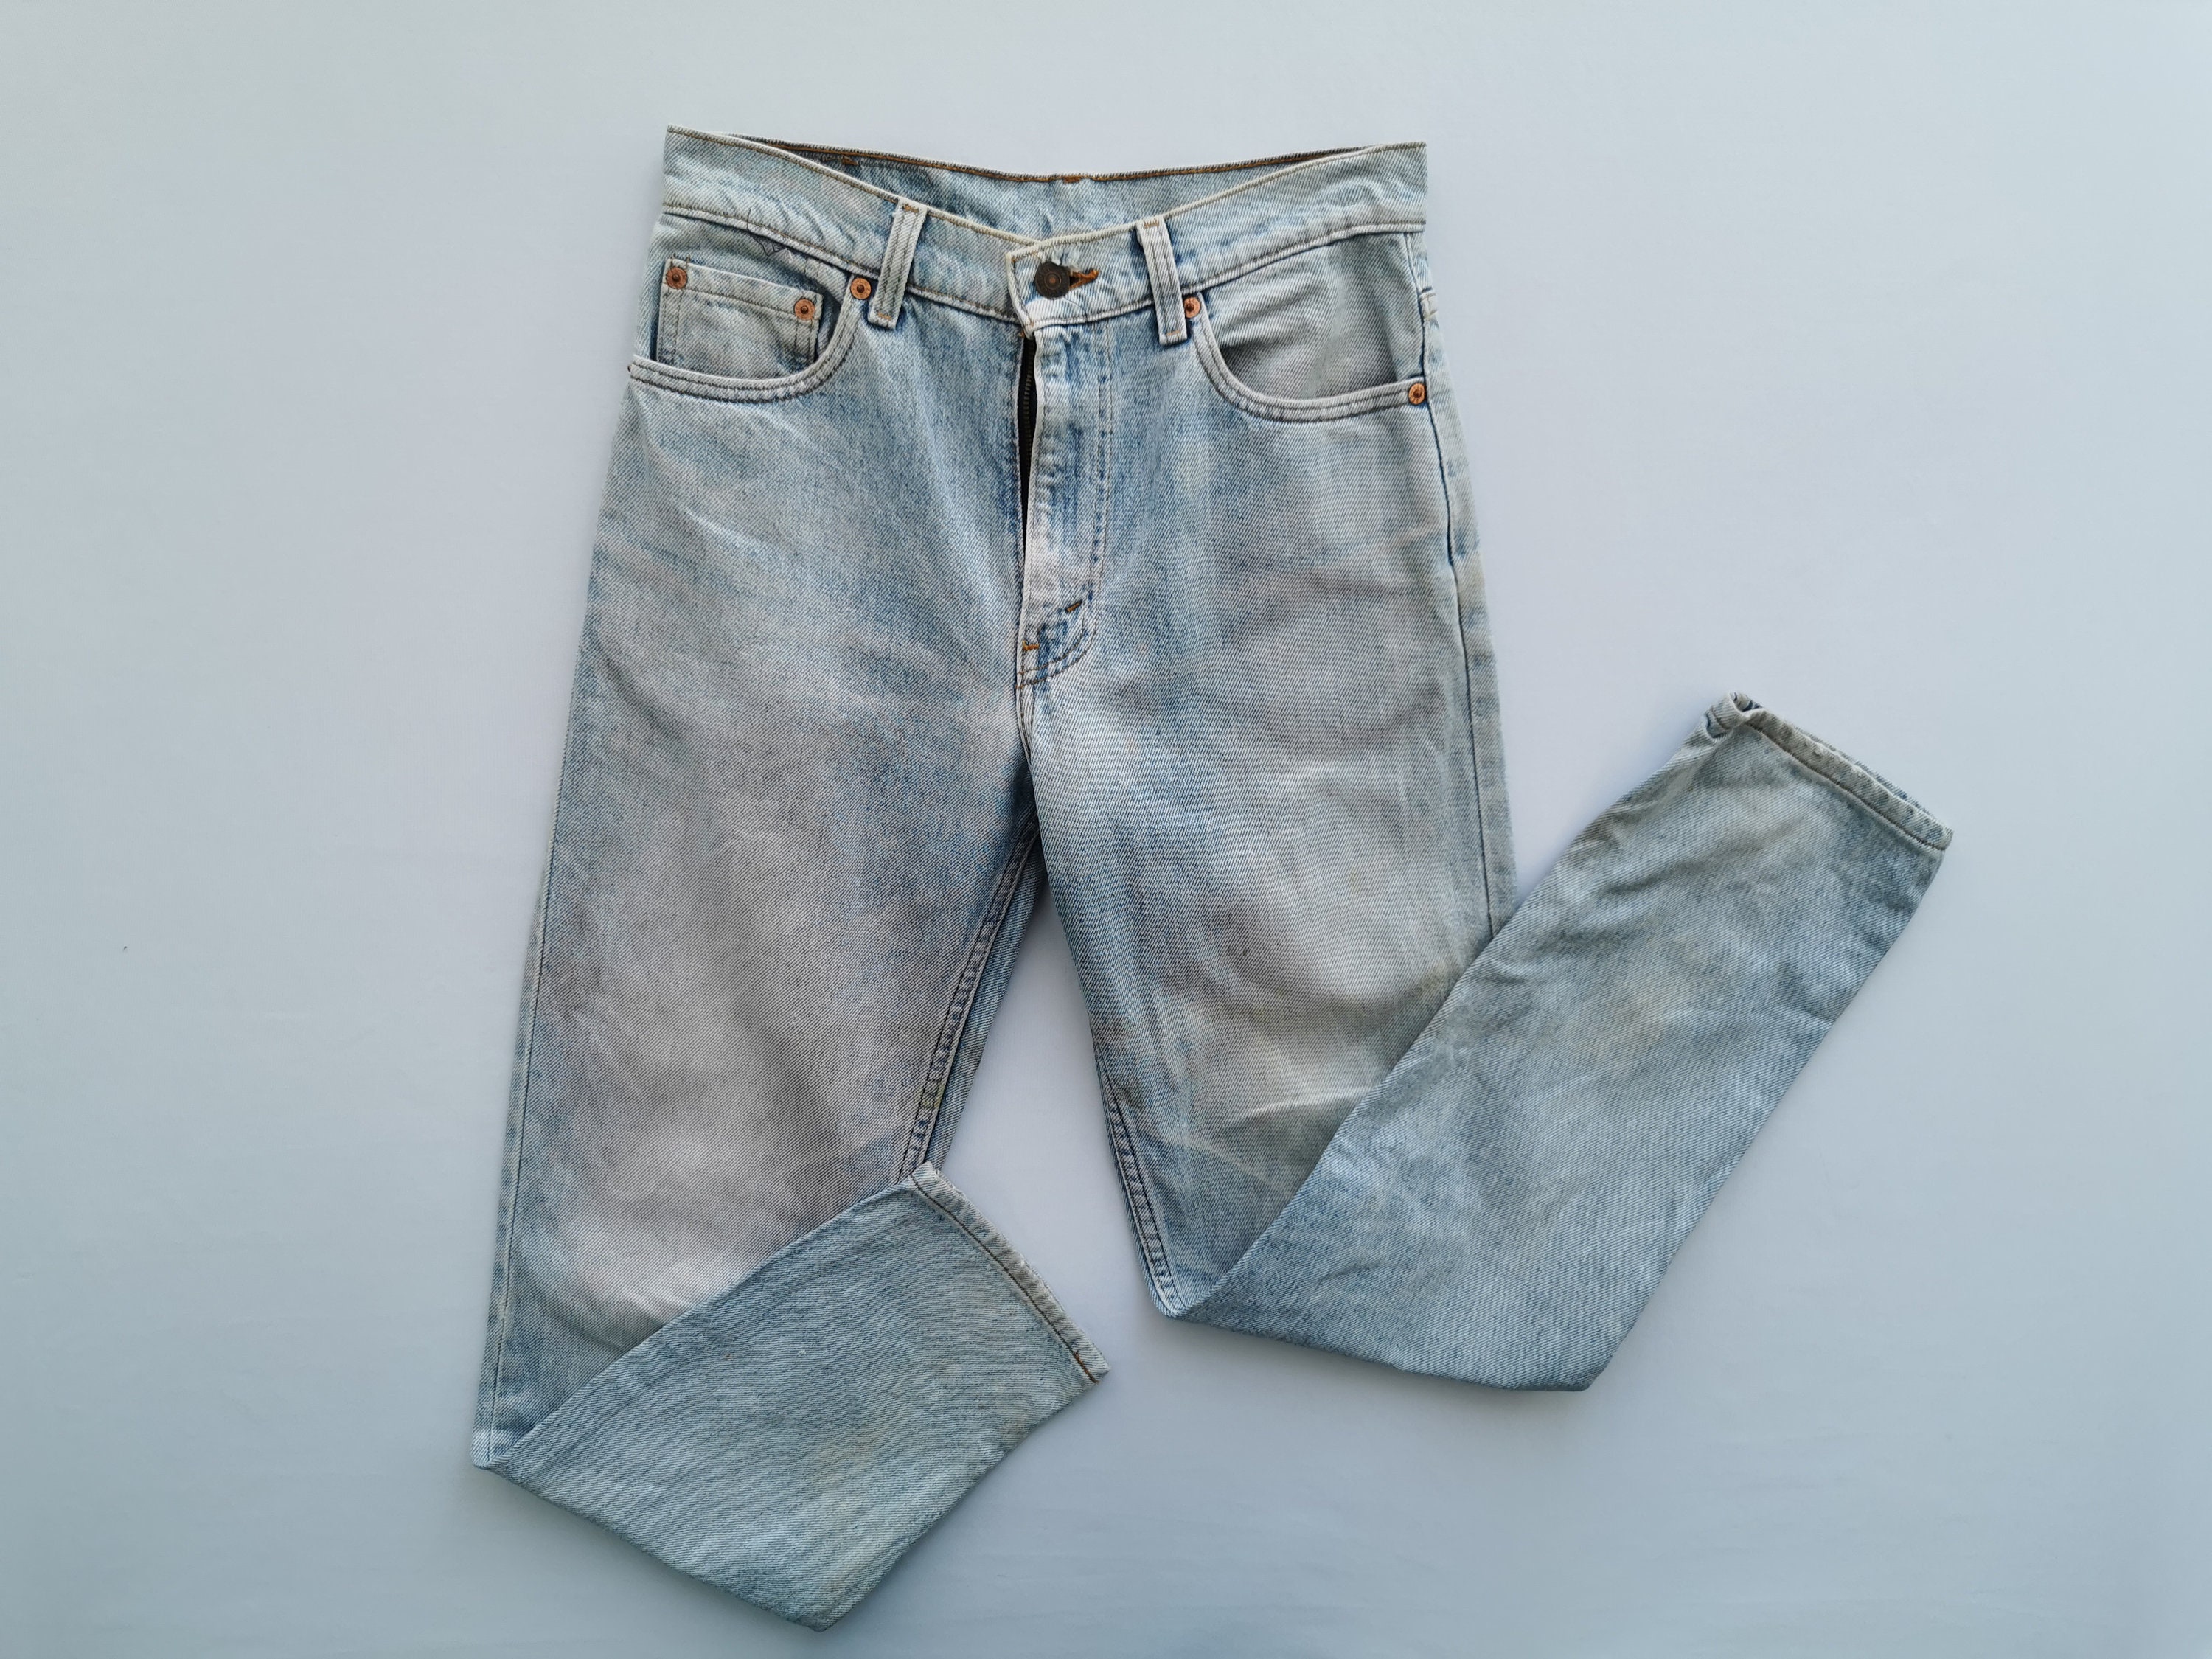 Levis 610-0217 Jeans Distressed Vintage Size 28 Levis 610-0217 - Etsy